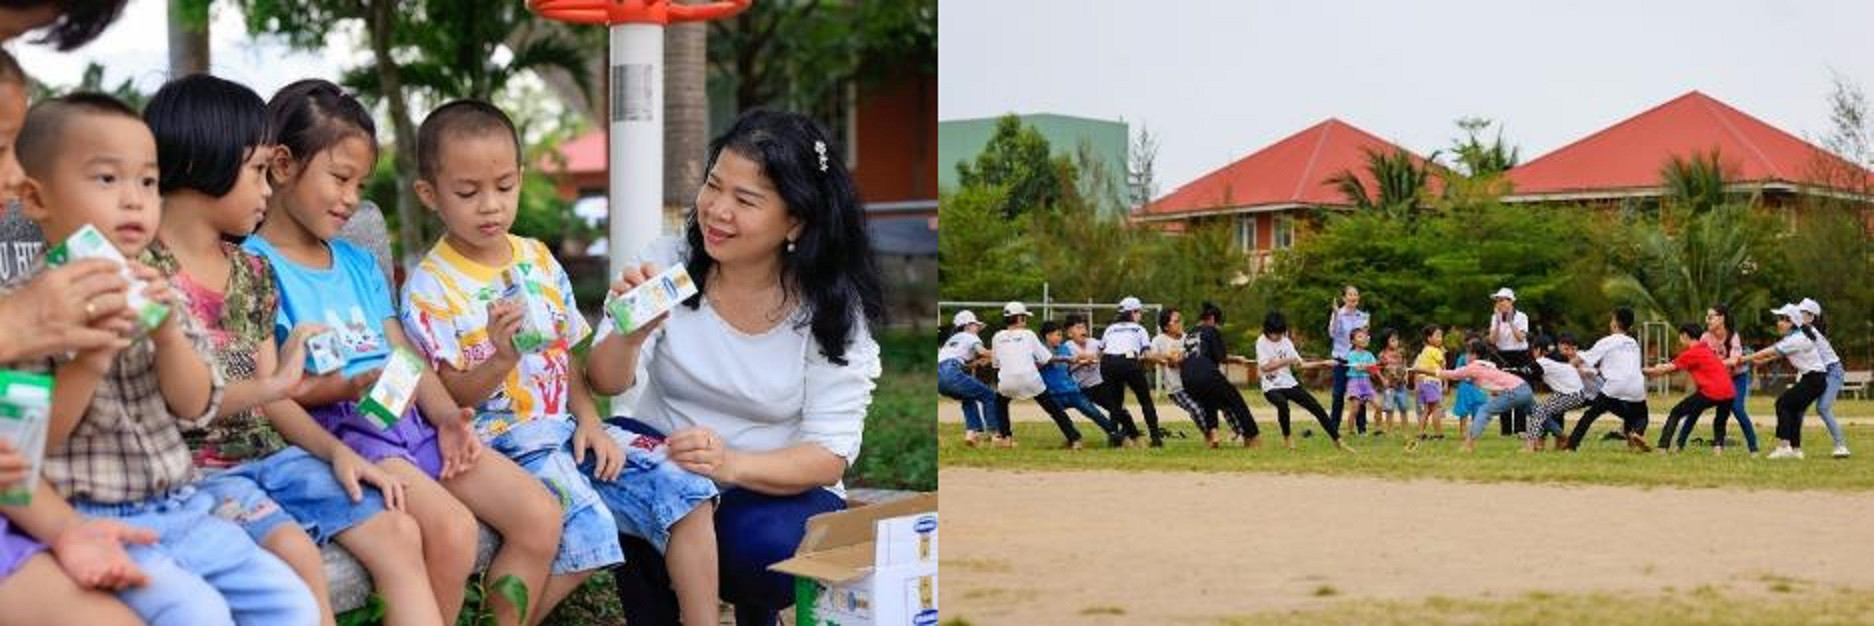 Đoàn công tác Quỹ sữa và Vinamilk tham gia các hoạt động vui chơi cùng các em nhỏ.